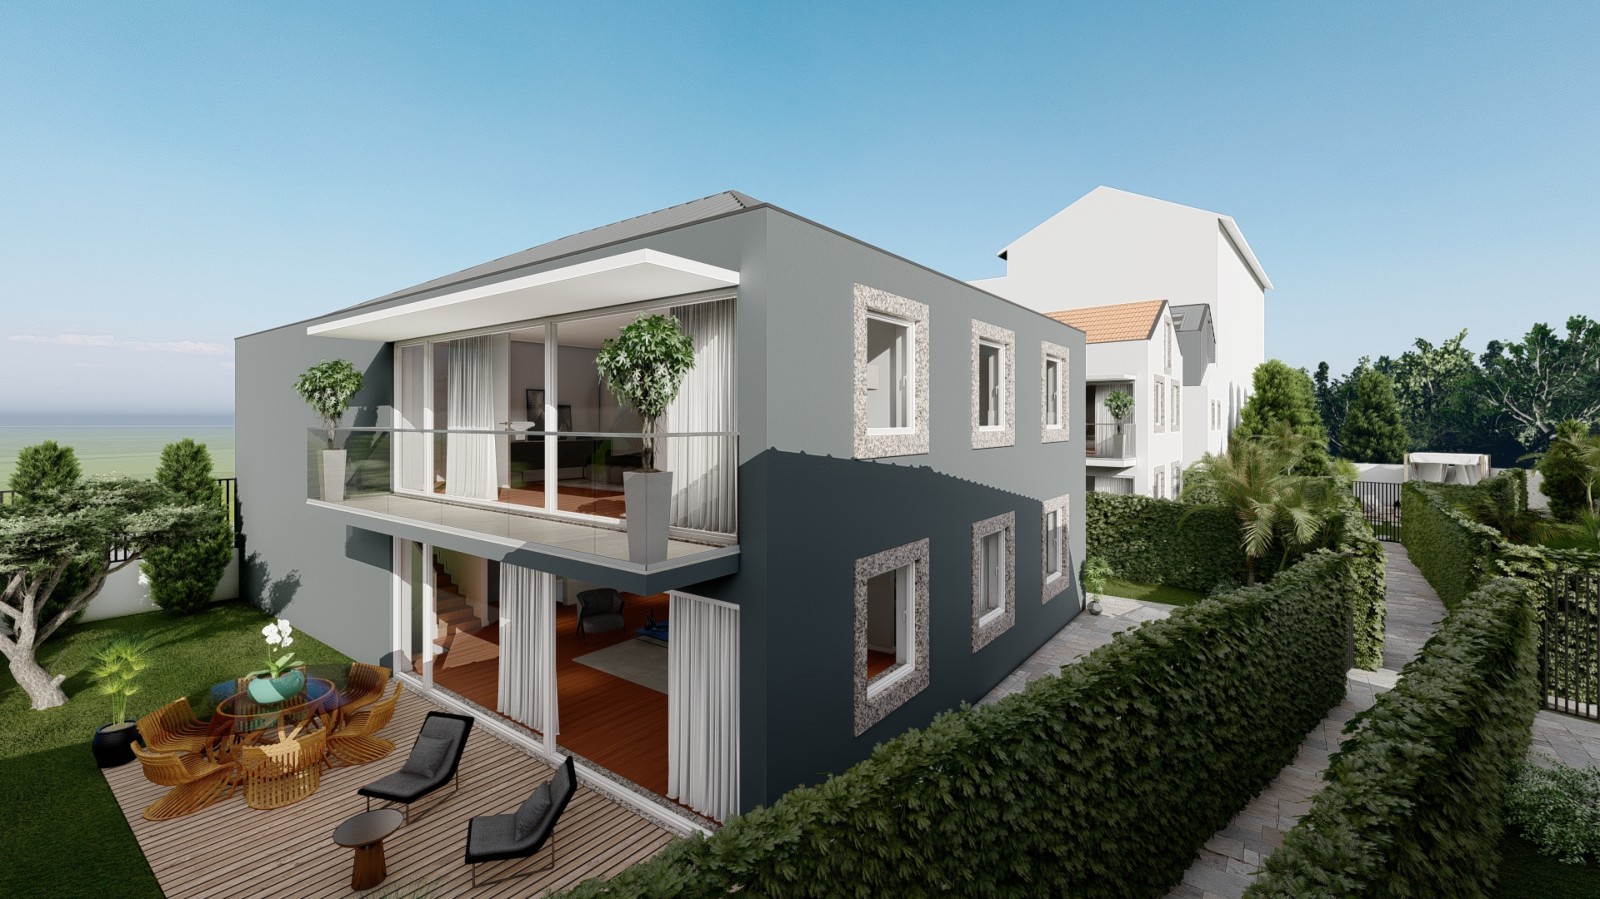 new-luxury-villa-with-garden-for-sale-in-leca-da-palmeira-porto-portugal